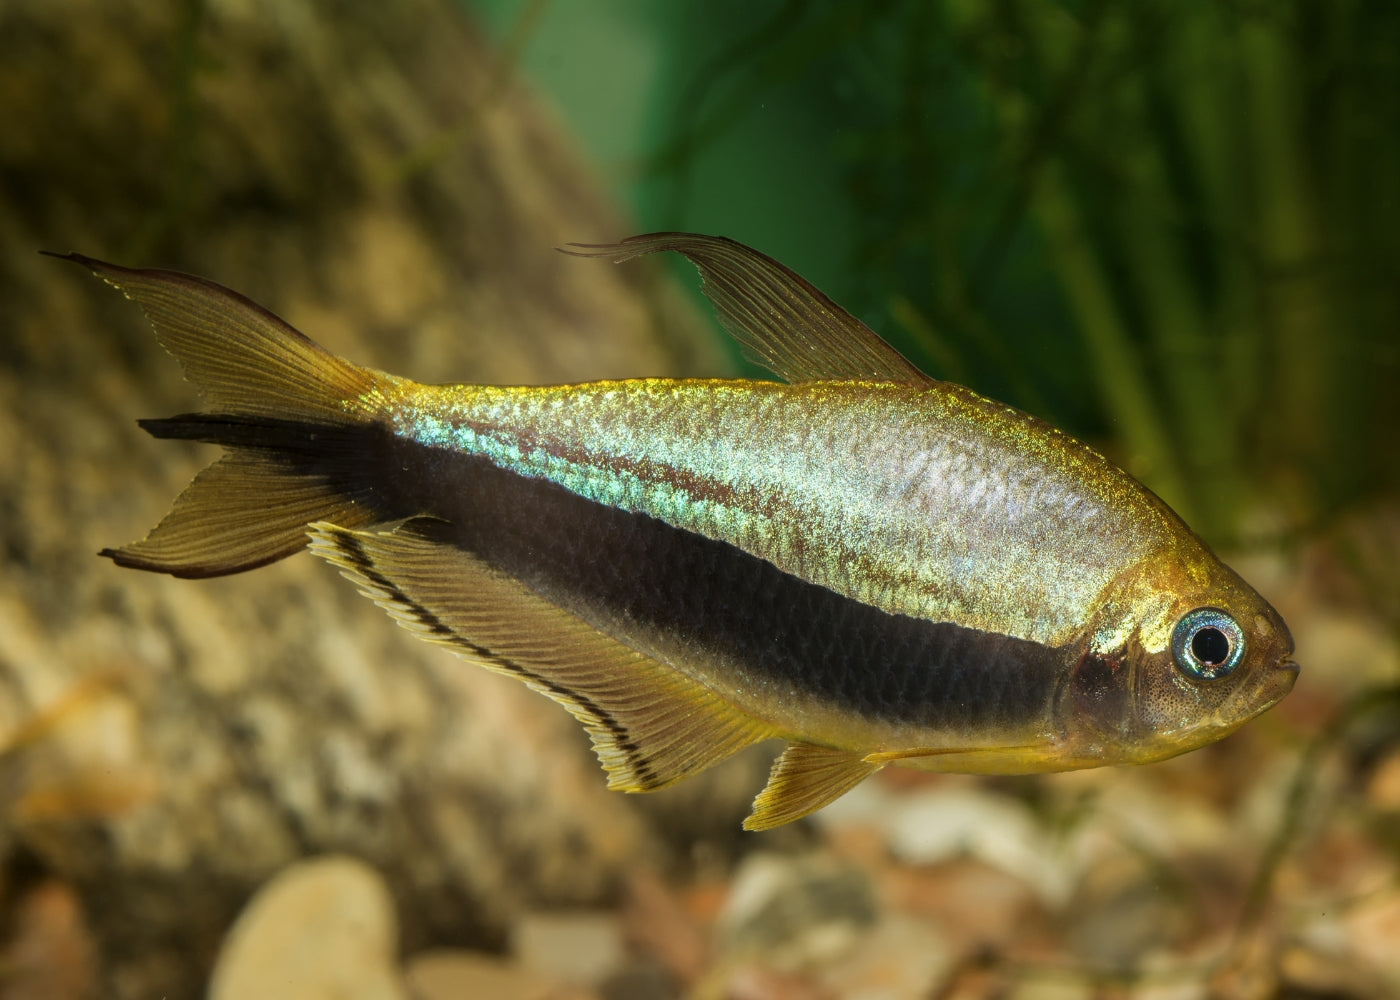 Emperor Tetra for sale in coburg aquarium | Buy tropical freshwater fish  | Aquarium fish store online | Coburg Aquarium